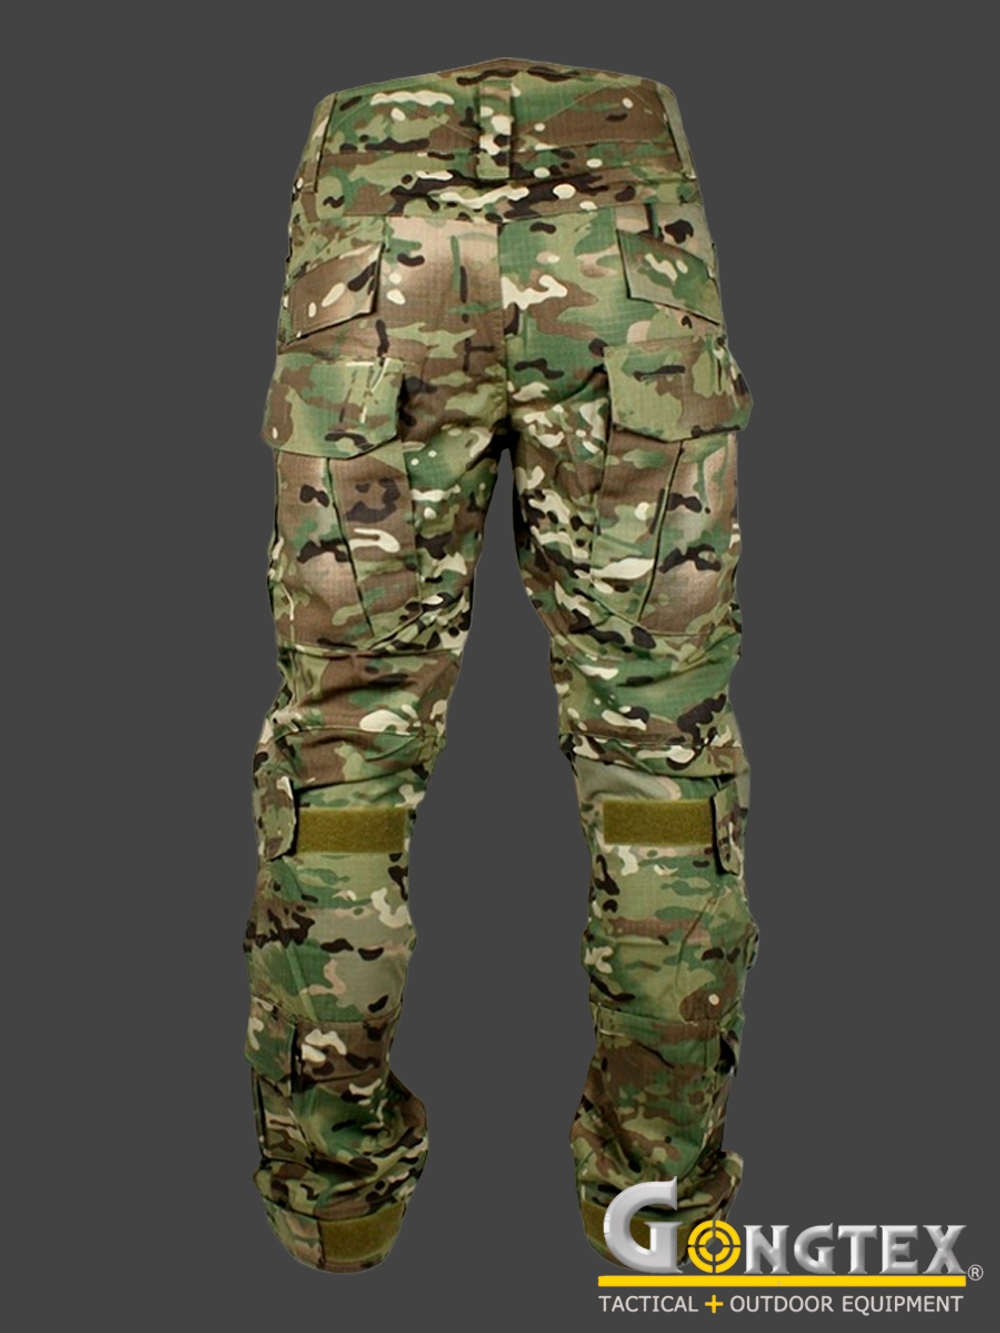 Боевые брюки Gongtex Alpha Tactical Pants с наколенниками. Мультикам